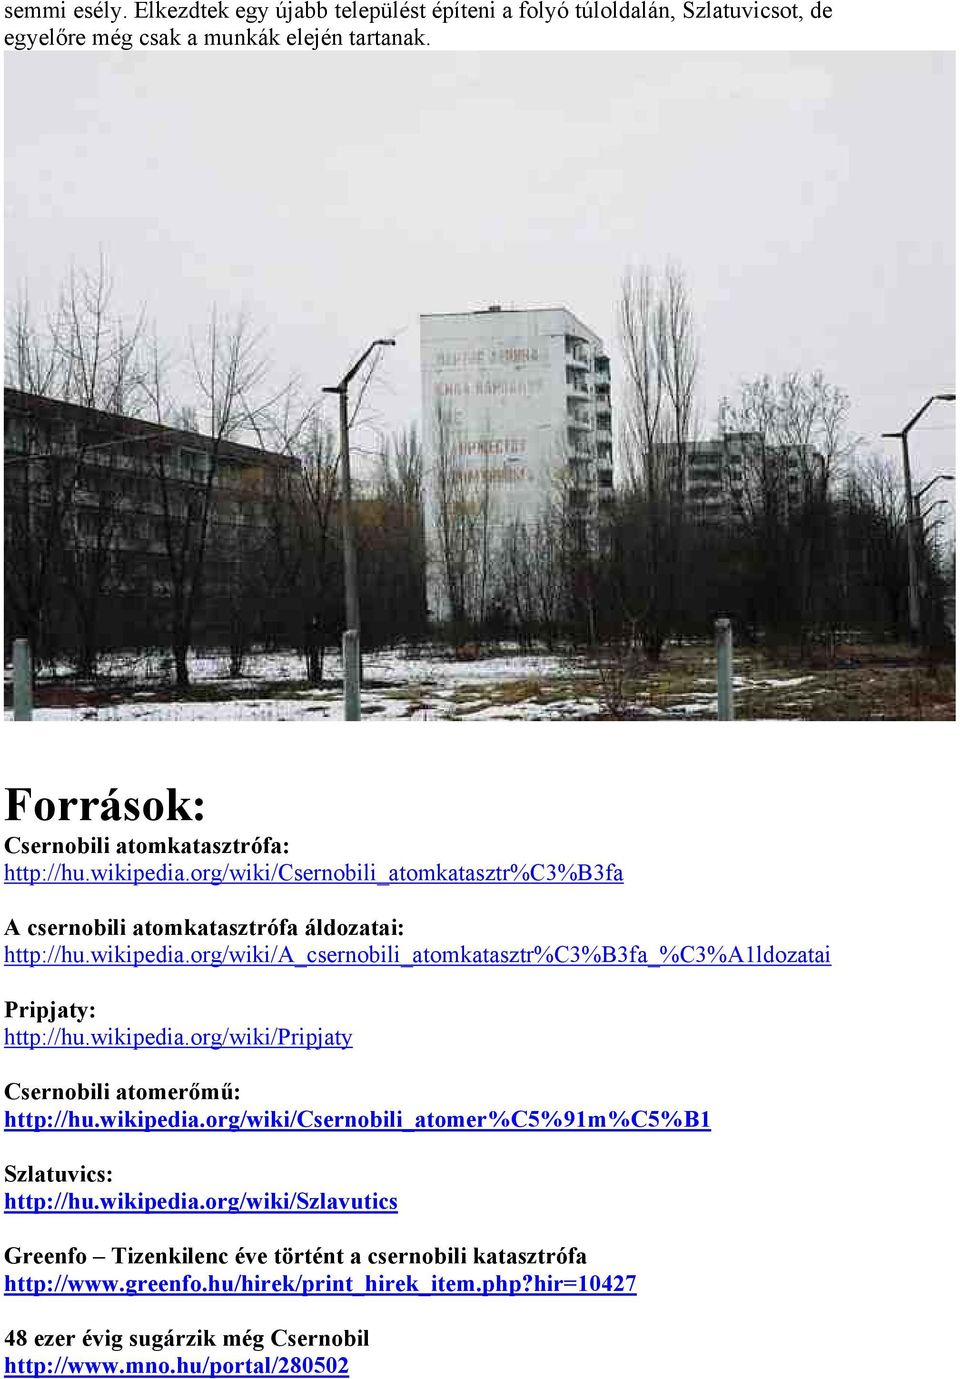 wikipedia.org/wiki/pripjaty Csernobili atomerőmű: h ttp://hu.wikipedia.org/wiki/csernobili_atomer%c5%91m%c5%b1 Szlatuvics: h ttp://hu.wikipedia.org/wiki/szlavutics Greenfo Tizenkilenc éve történt a csernobili katasztrófa h ttp://www.